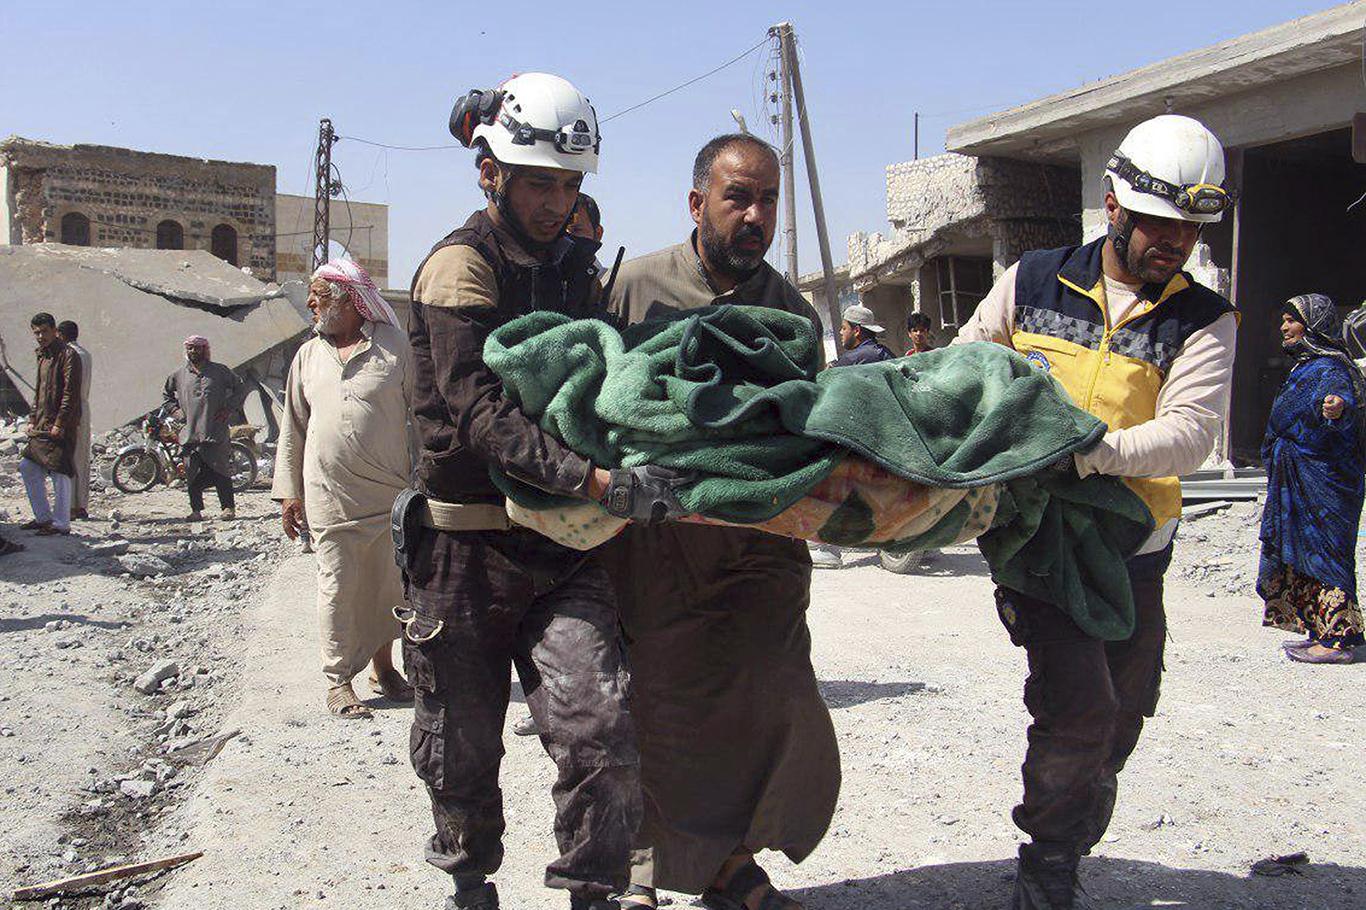 BM: İdlib'de siviller ölüyor